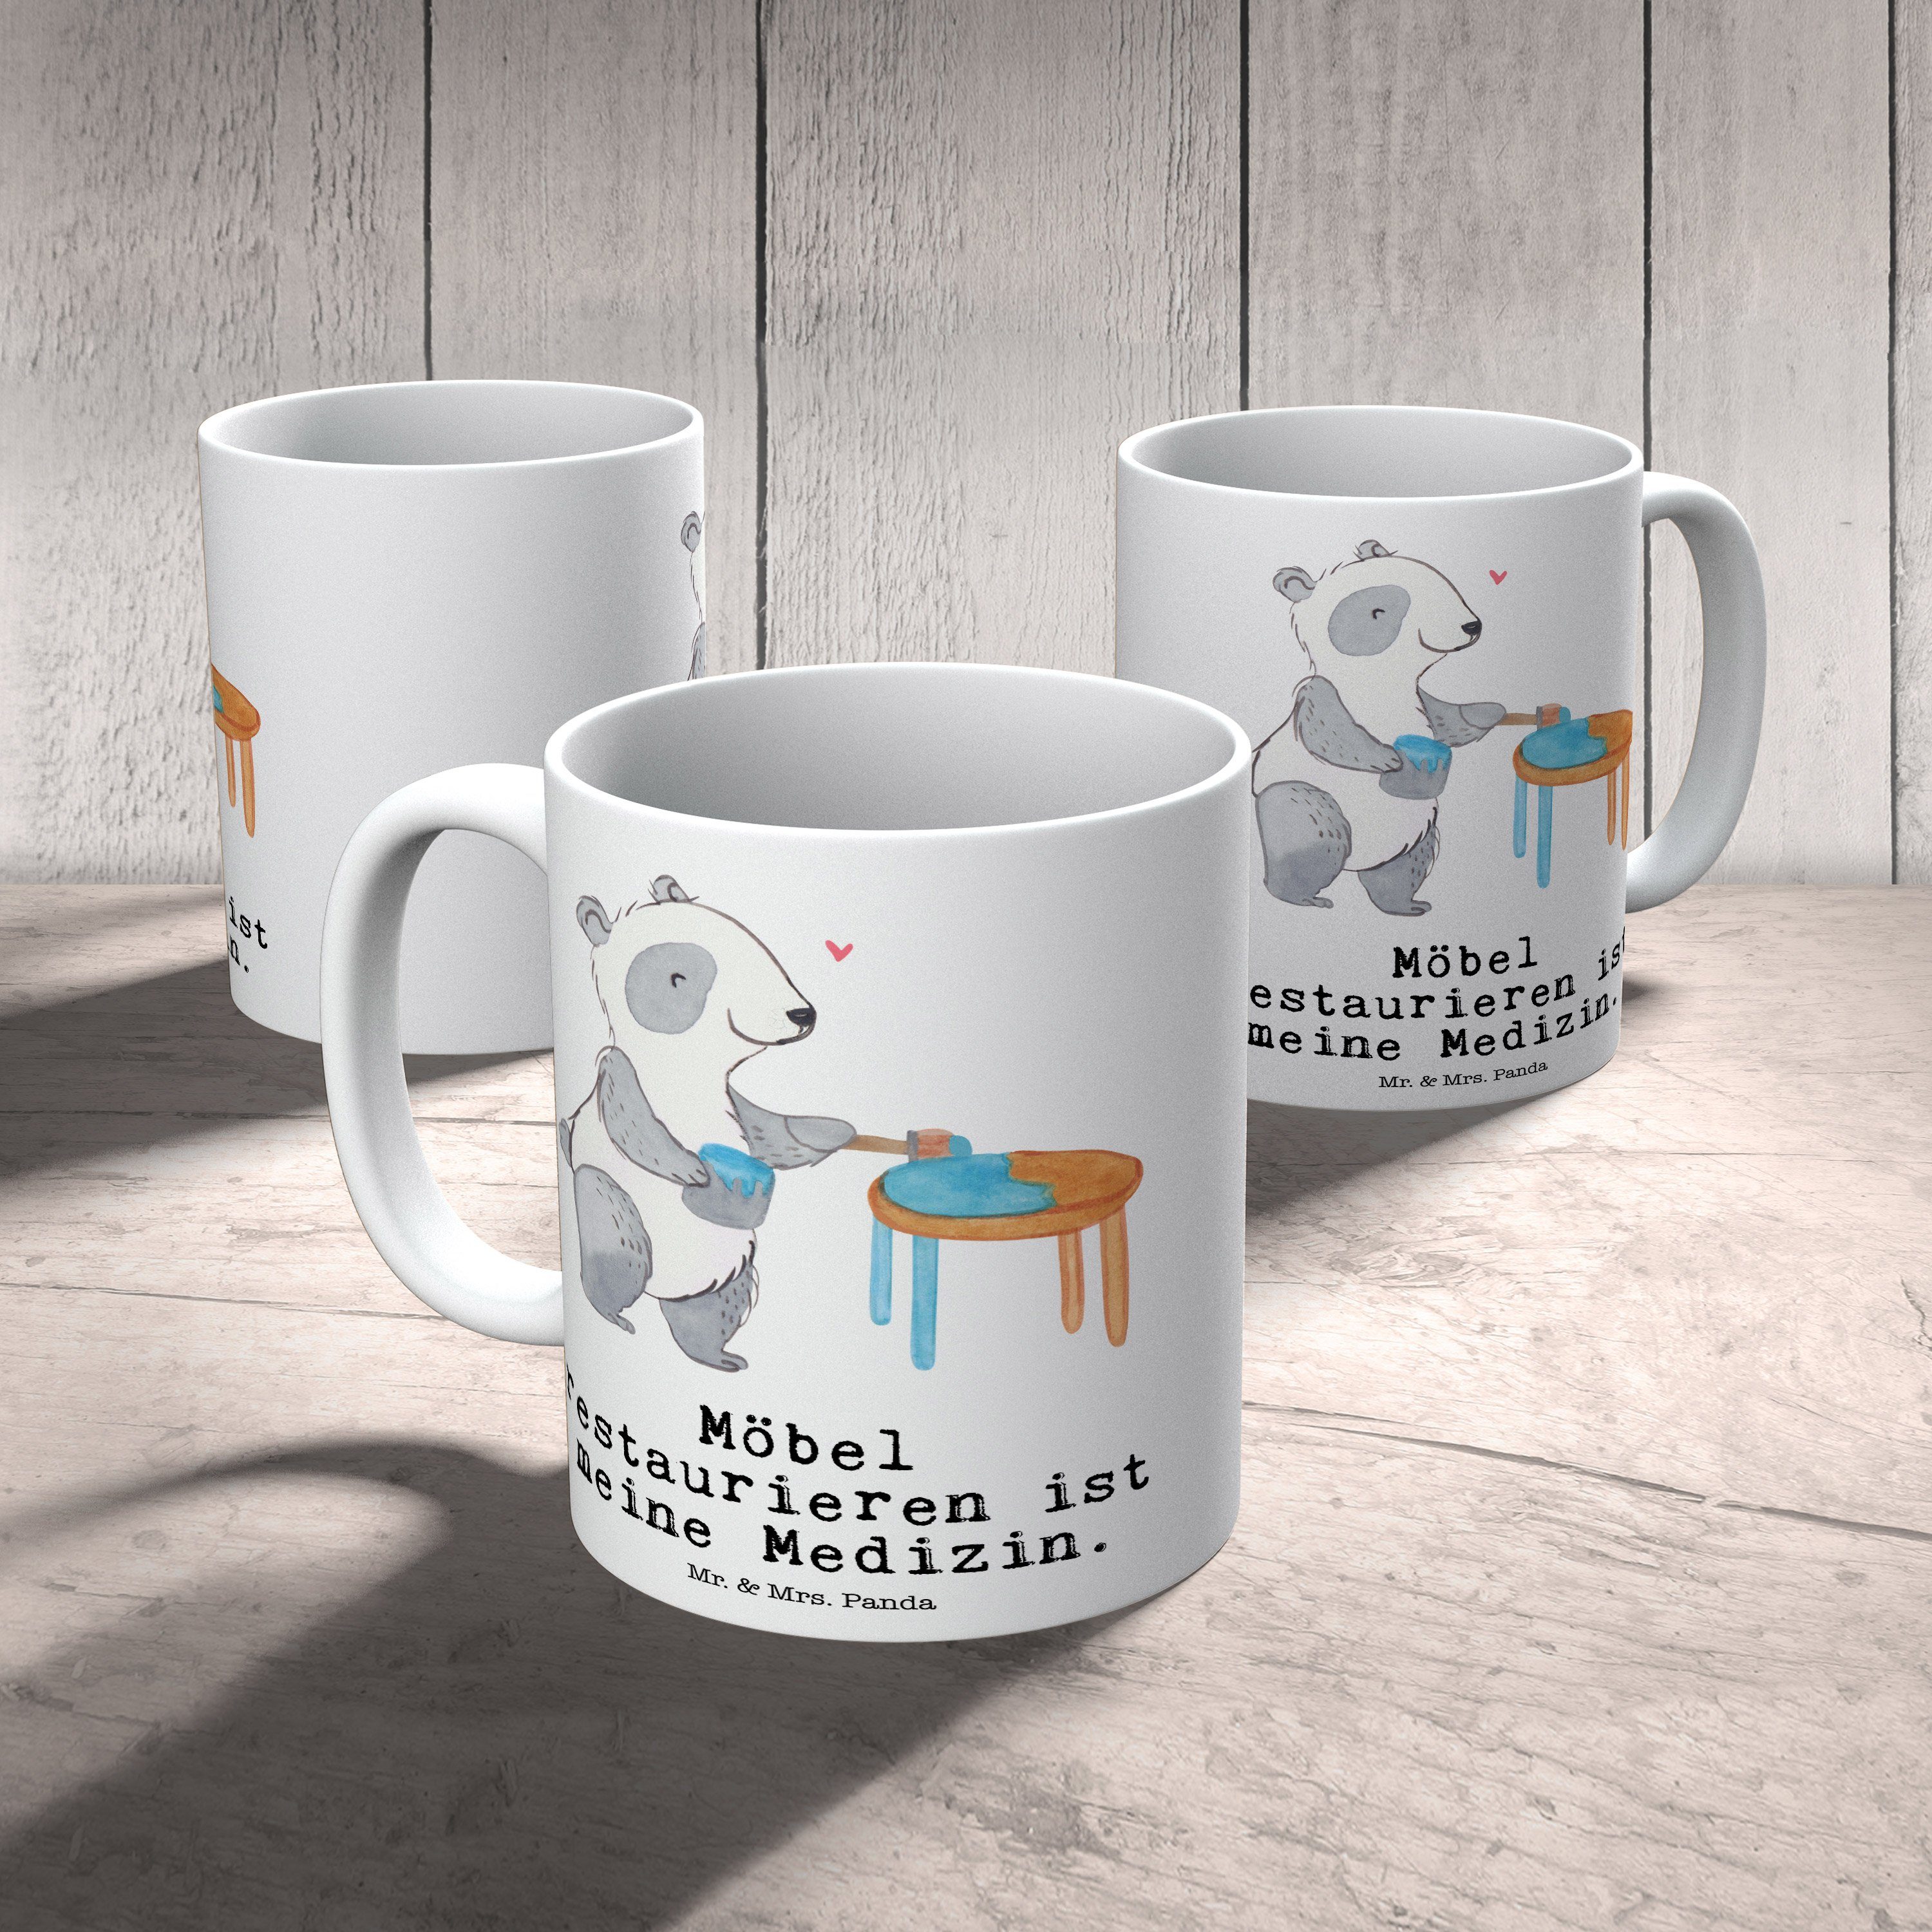 Mr. & Restaur, Tasse Keramik Panda Panda Mrs. - Geschenk, Möbel Sportler, Medizin - Weiß restaurieren